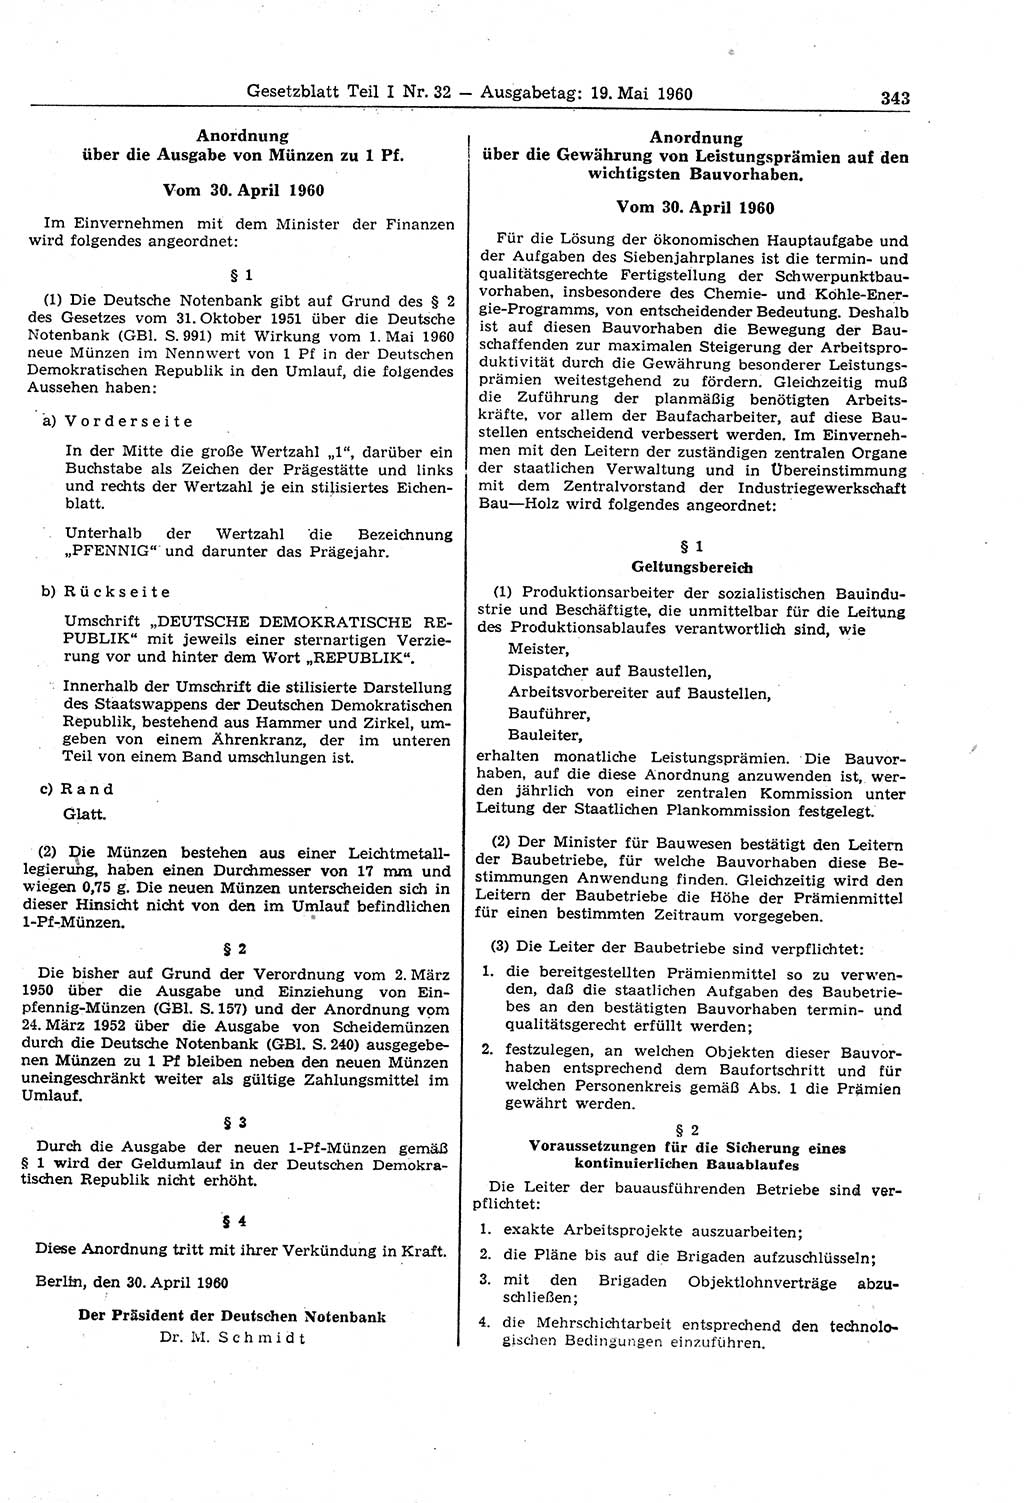 Gesetzblatt (GBl.) der Deutschen Demokratischen Republik (DDR) Teil Ⅰ 1960, Seite 343 (GBl. DDR Ⅰ 1960, S. 343)